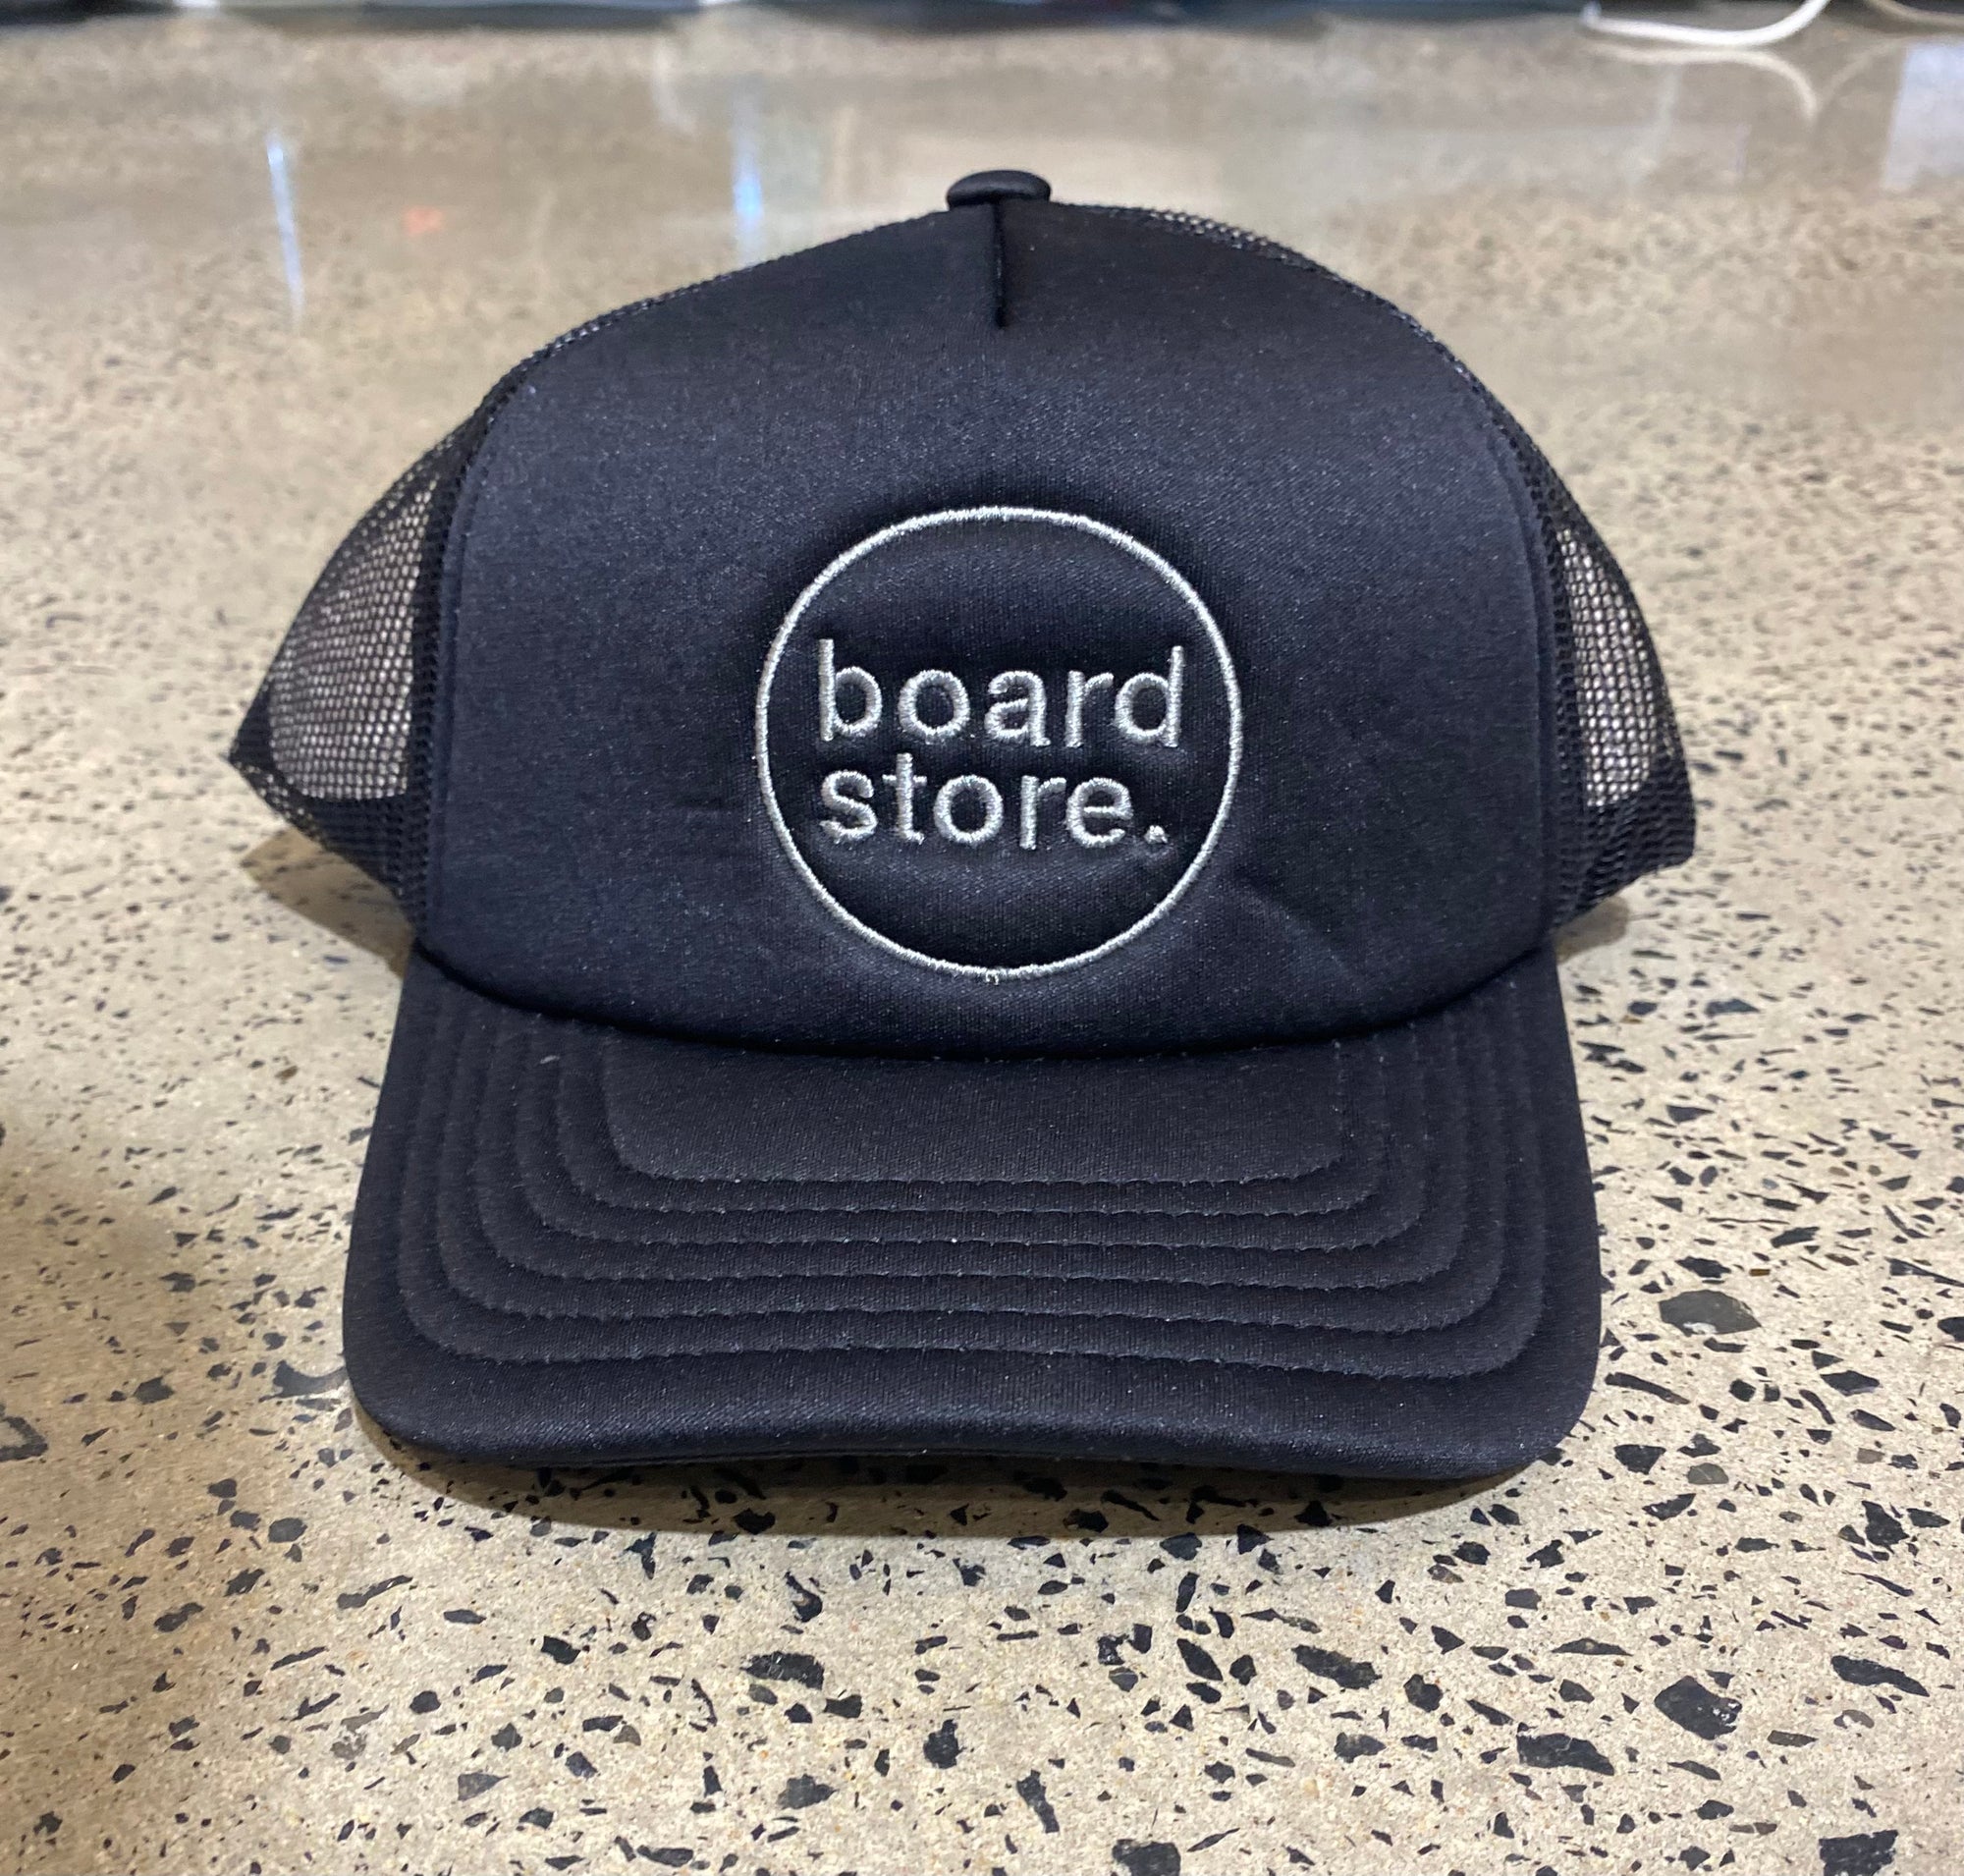 Boardstore Trucker cap - black Charcoal - Board Store Board StoreHats  